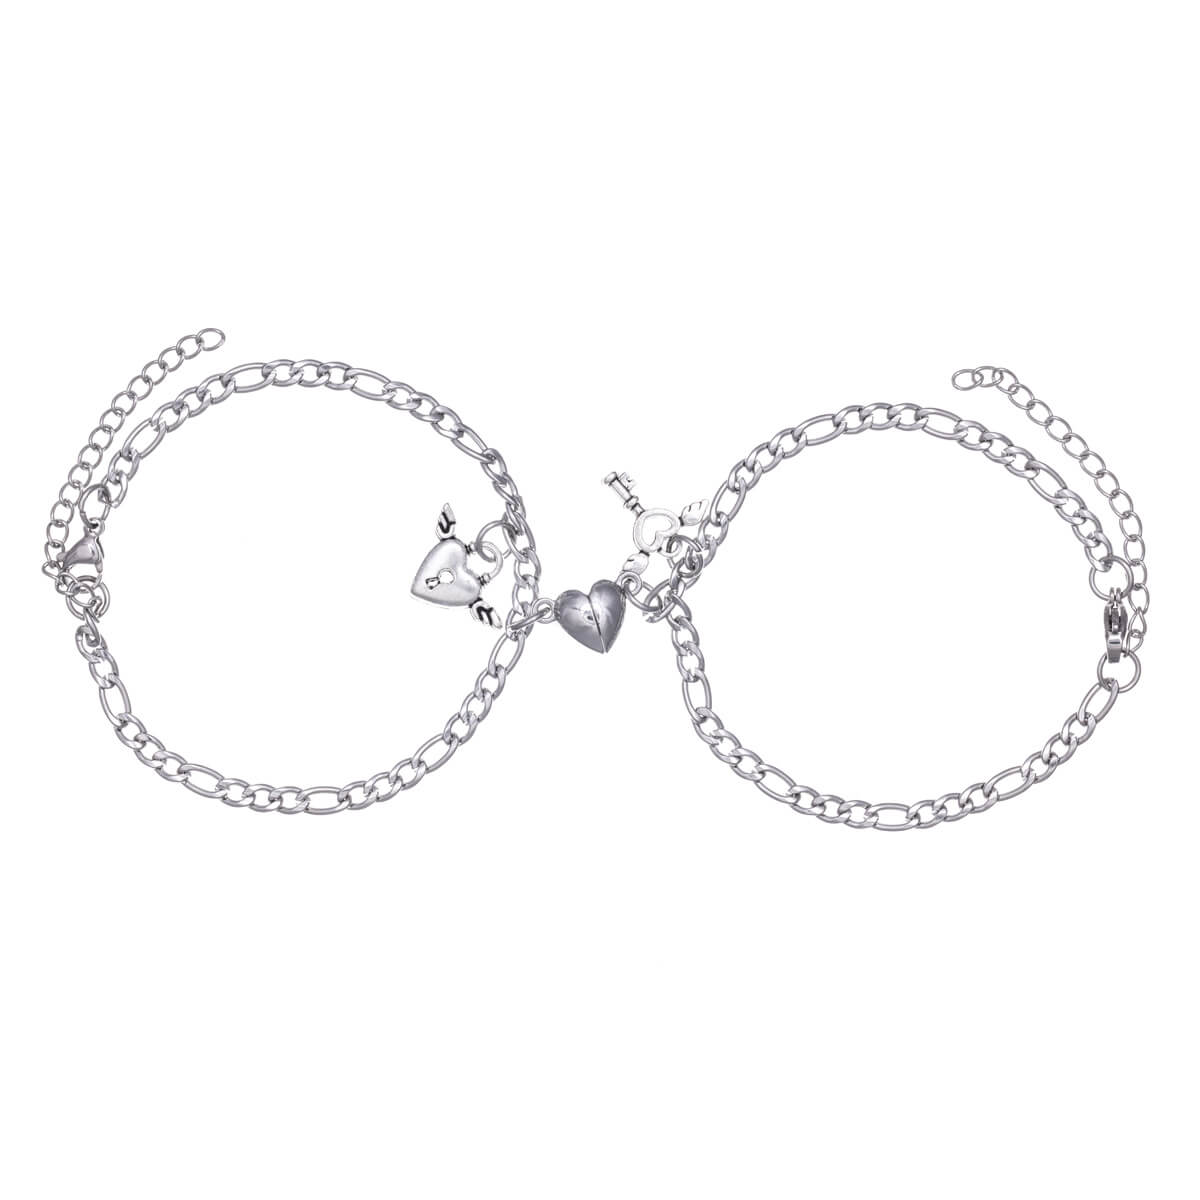 Love bracelet friend bracelet figaro chain 2pcs (Steel 316L)